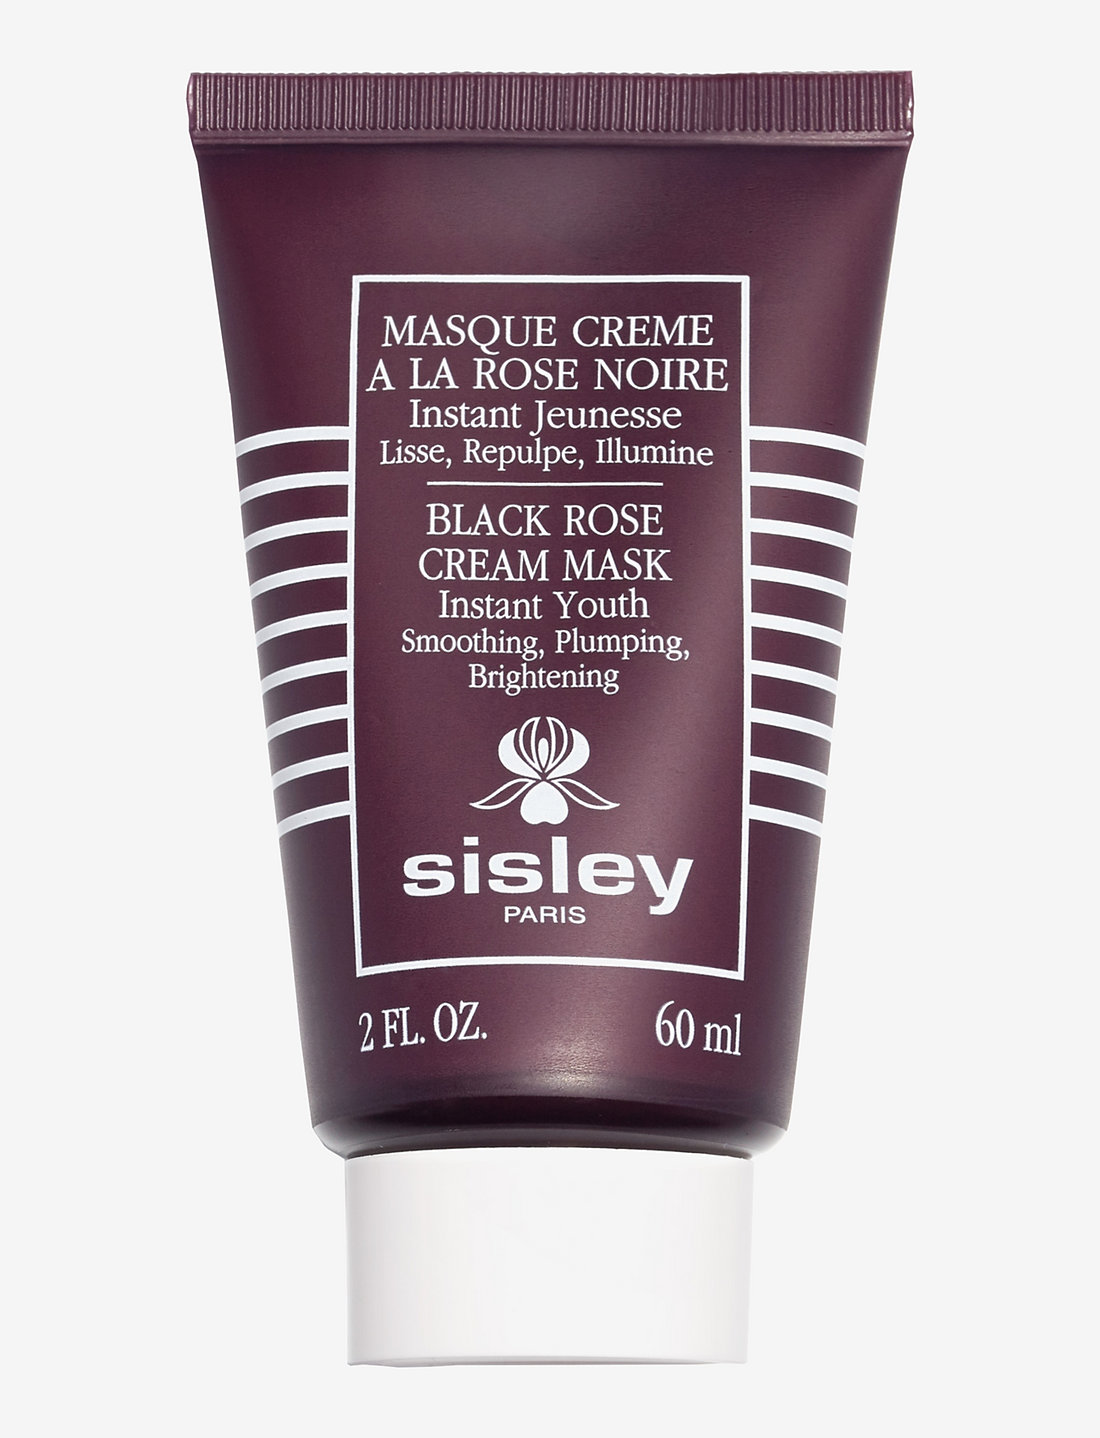 Tube - Rose Noire Masque Crème Mask La Sisley à Black Rose Ansigtsmasker Cream - -